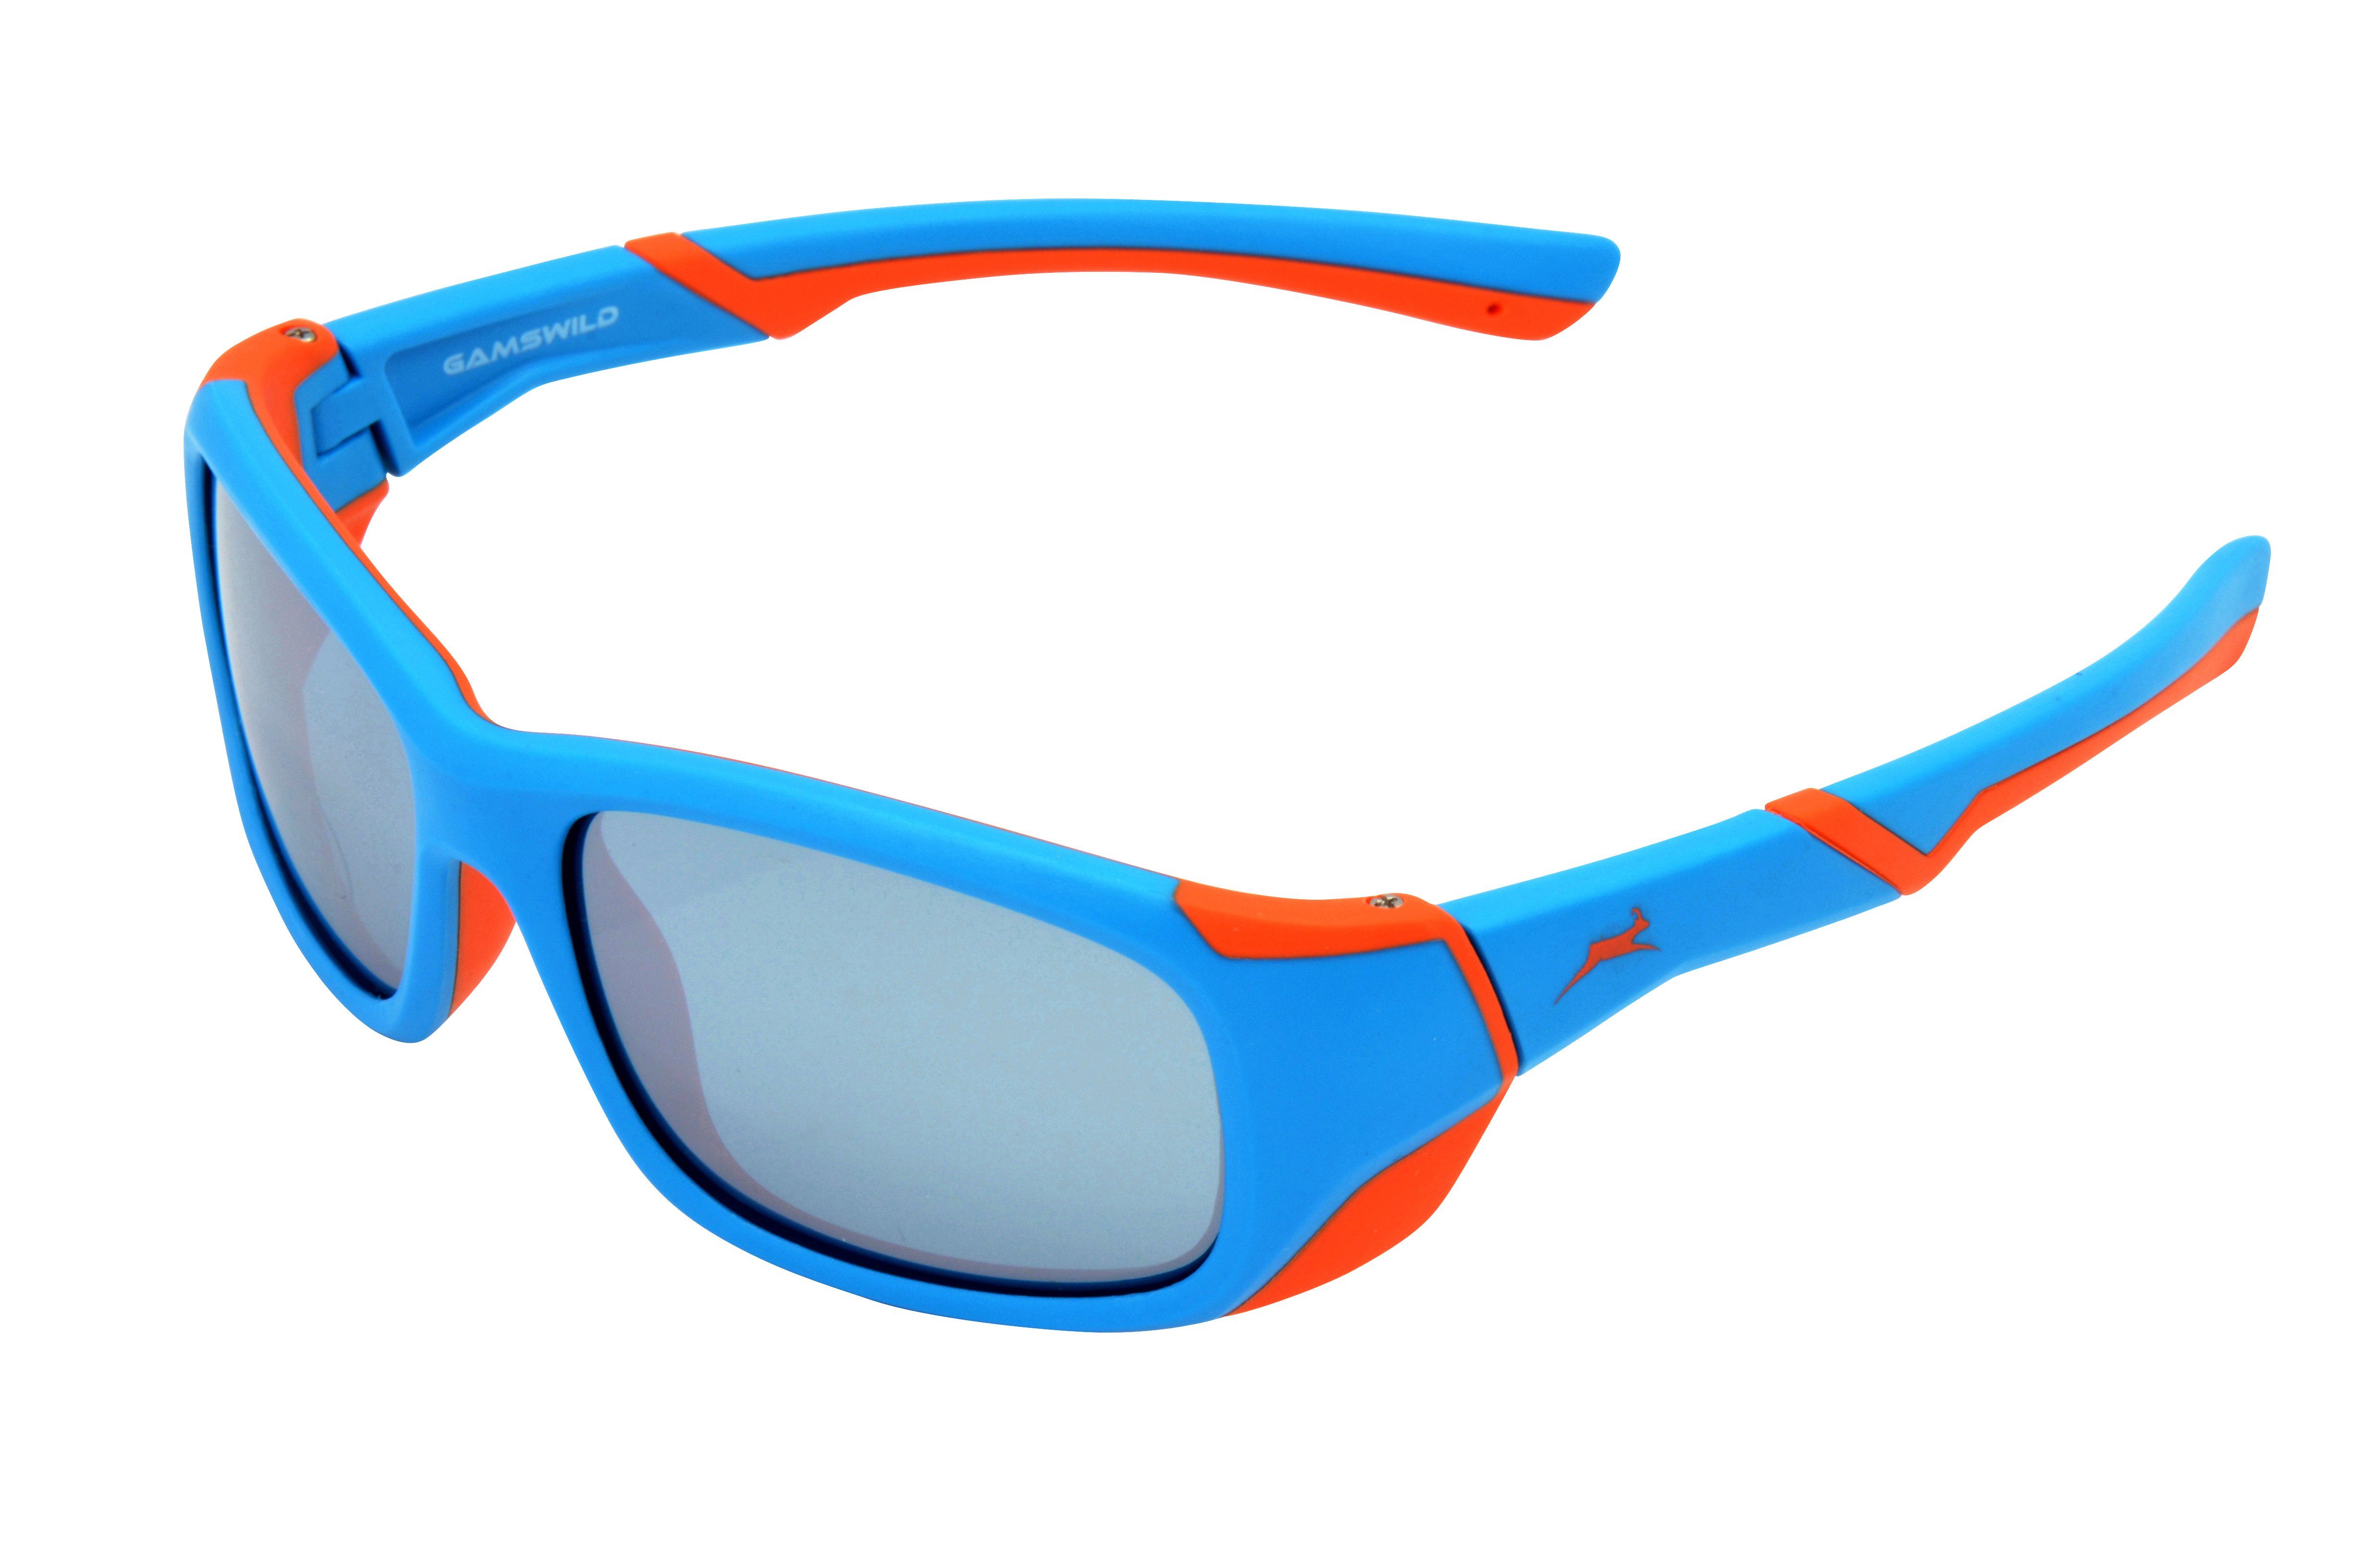 Gamswild Sonnenbrille »WJ5119 GAMSKIDS Kinderbrille 6-12 Jahre Jugendbrille  Mädchen Jungen Unisex, blau - orange, grün - grau, dunkelrot -orange« super  flexible Bügel online kaufen | OTTO